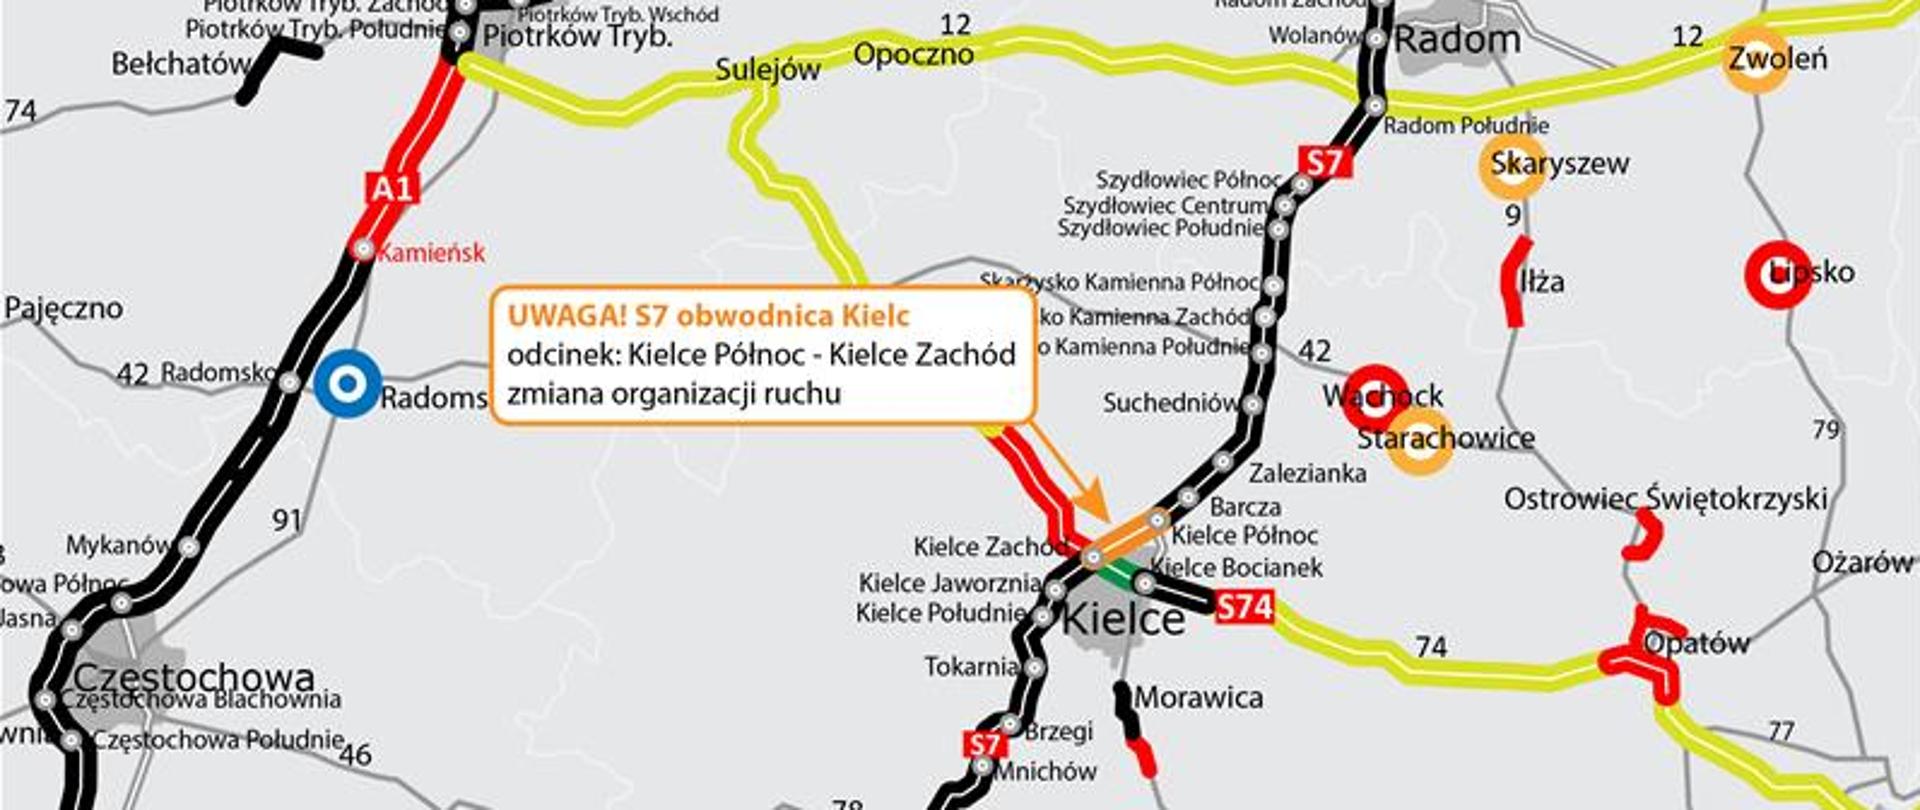 S7 obwodnica Kielc - zmiana organizacji ruchu - mapka z zaznaczonym miejscem zmiany 